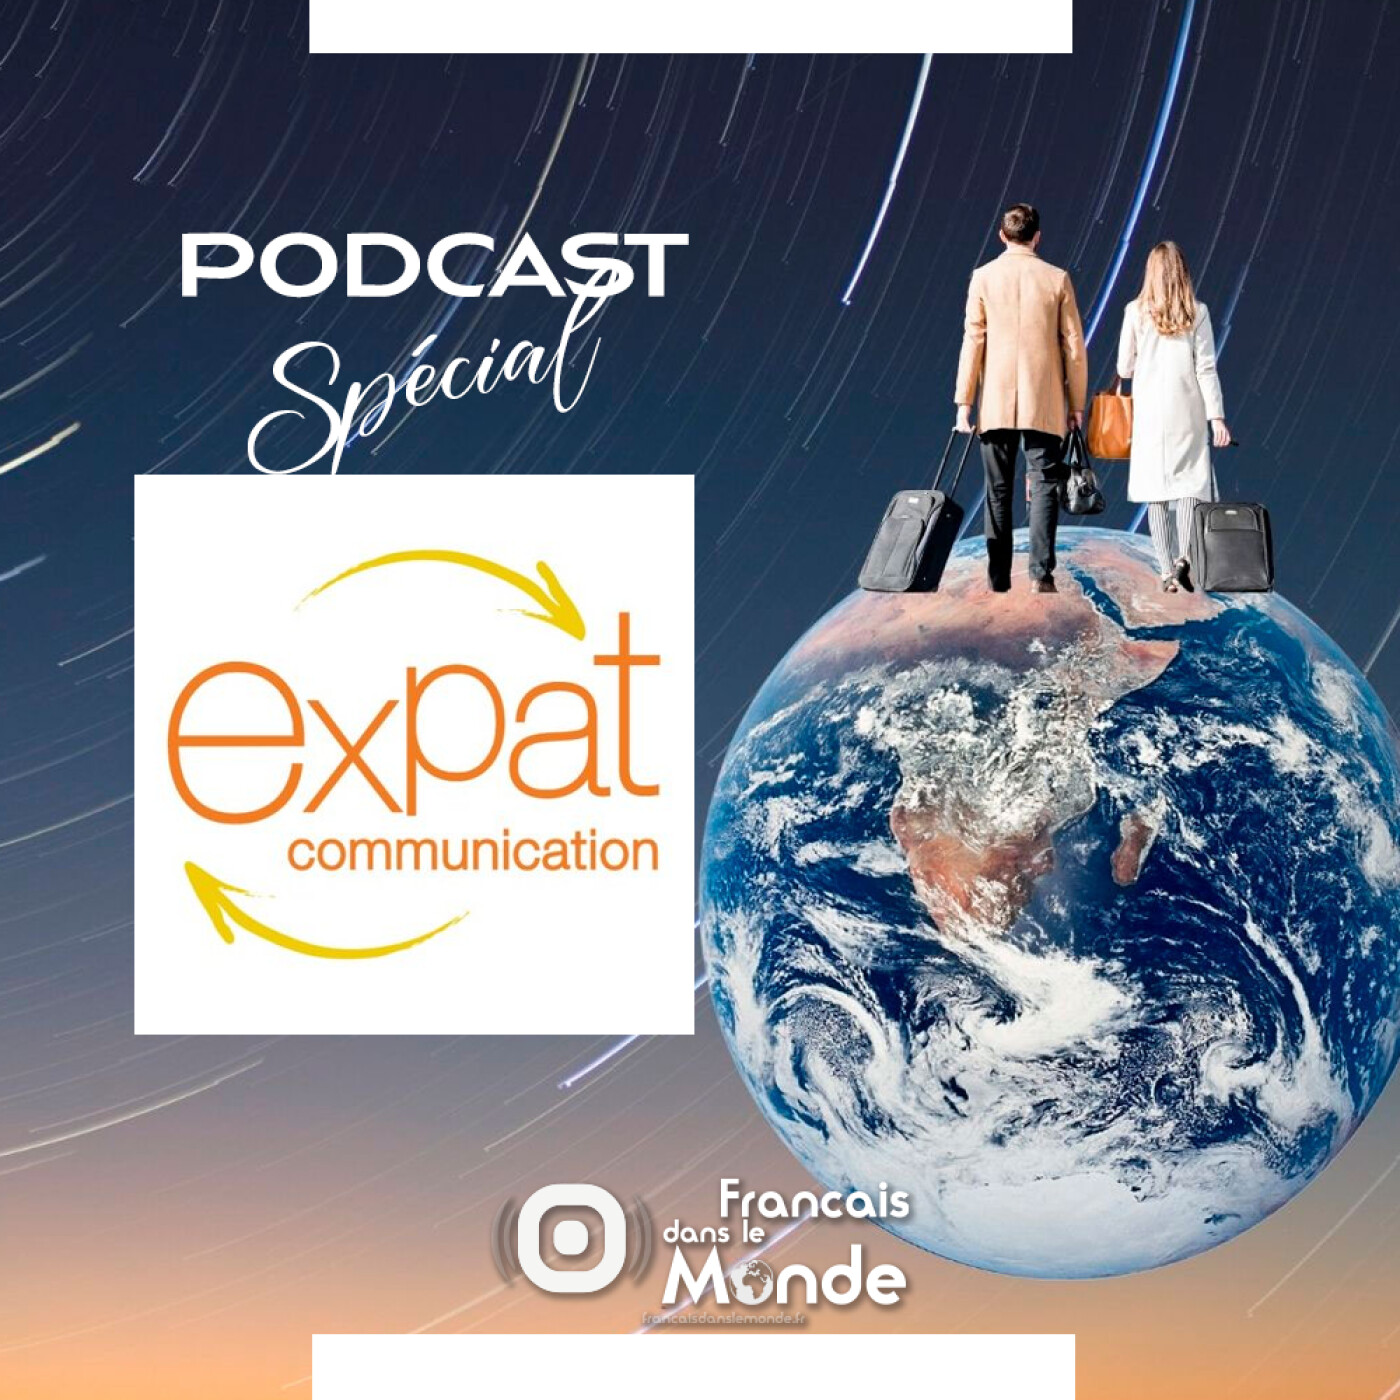 Podcast Spécial "Baromètre Expat Communication"